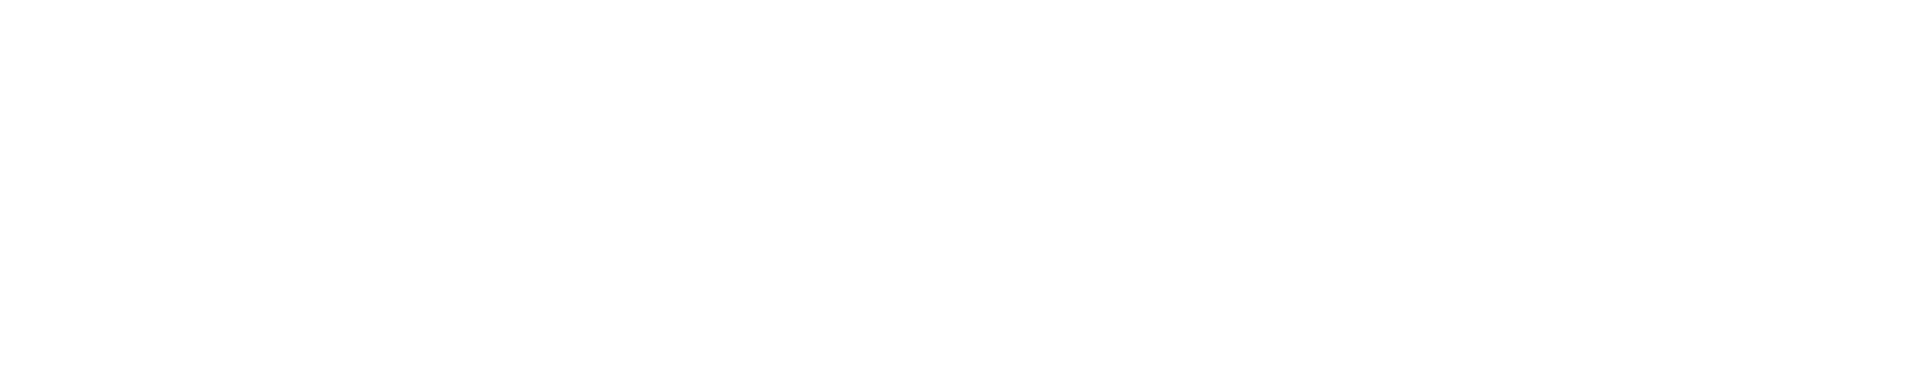 Logo del Plan de Recuperación, Transformación y Resiliencia del Gobierno de España.